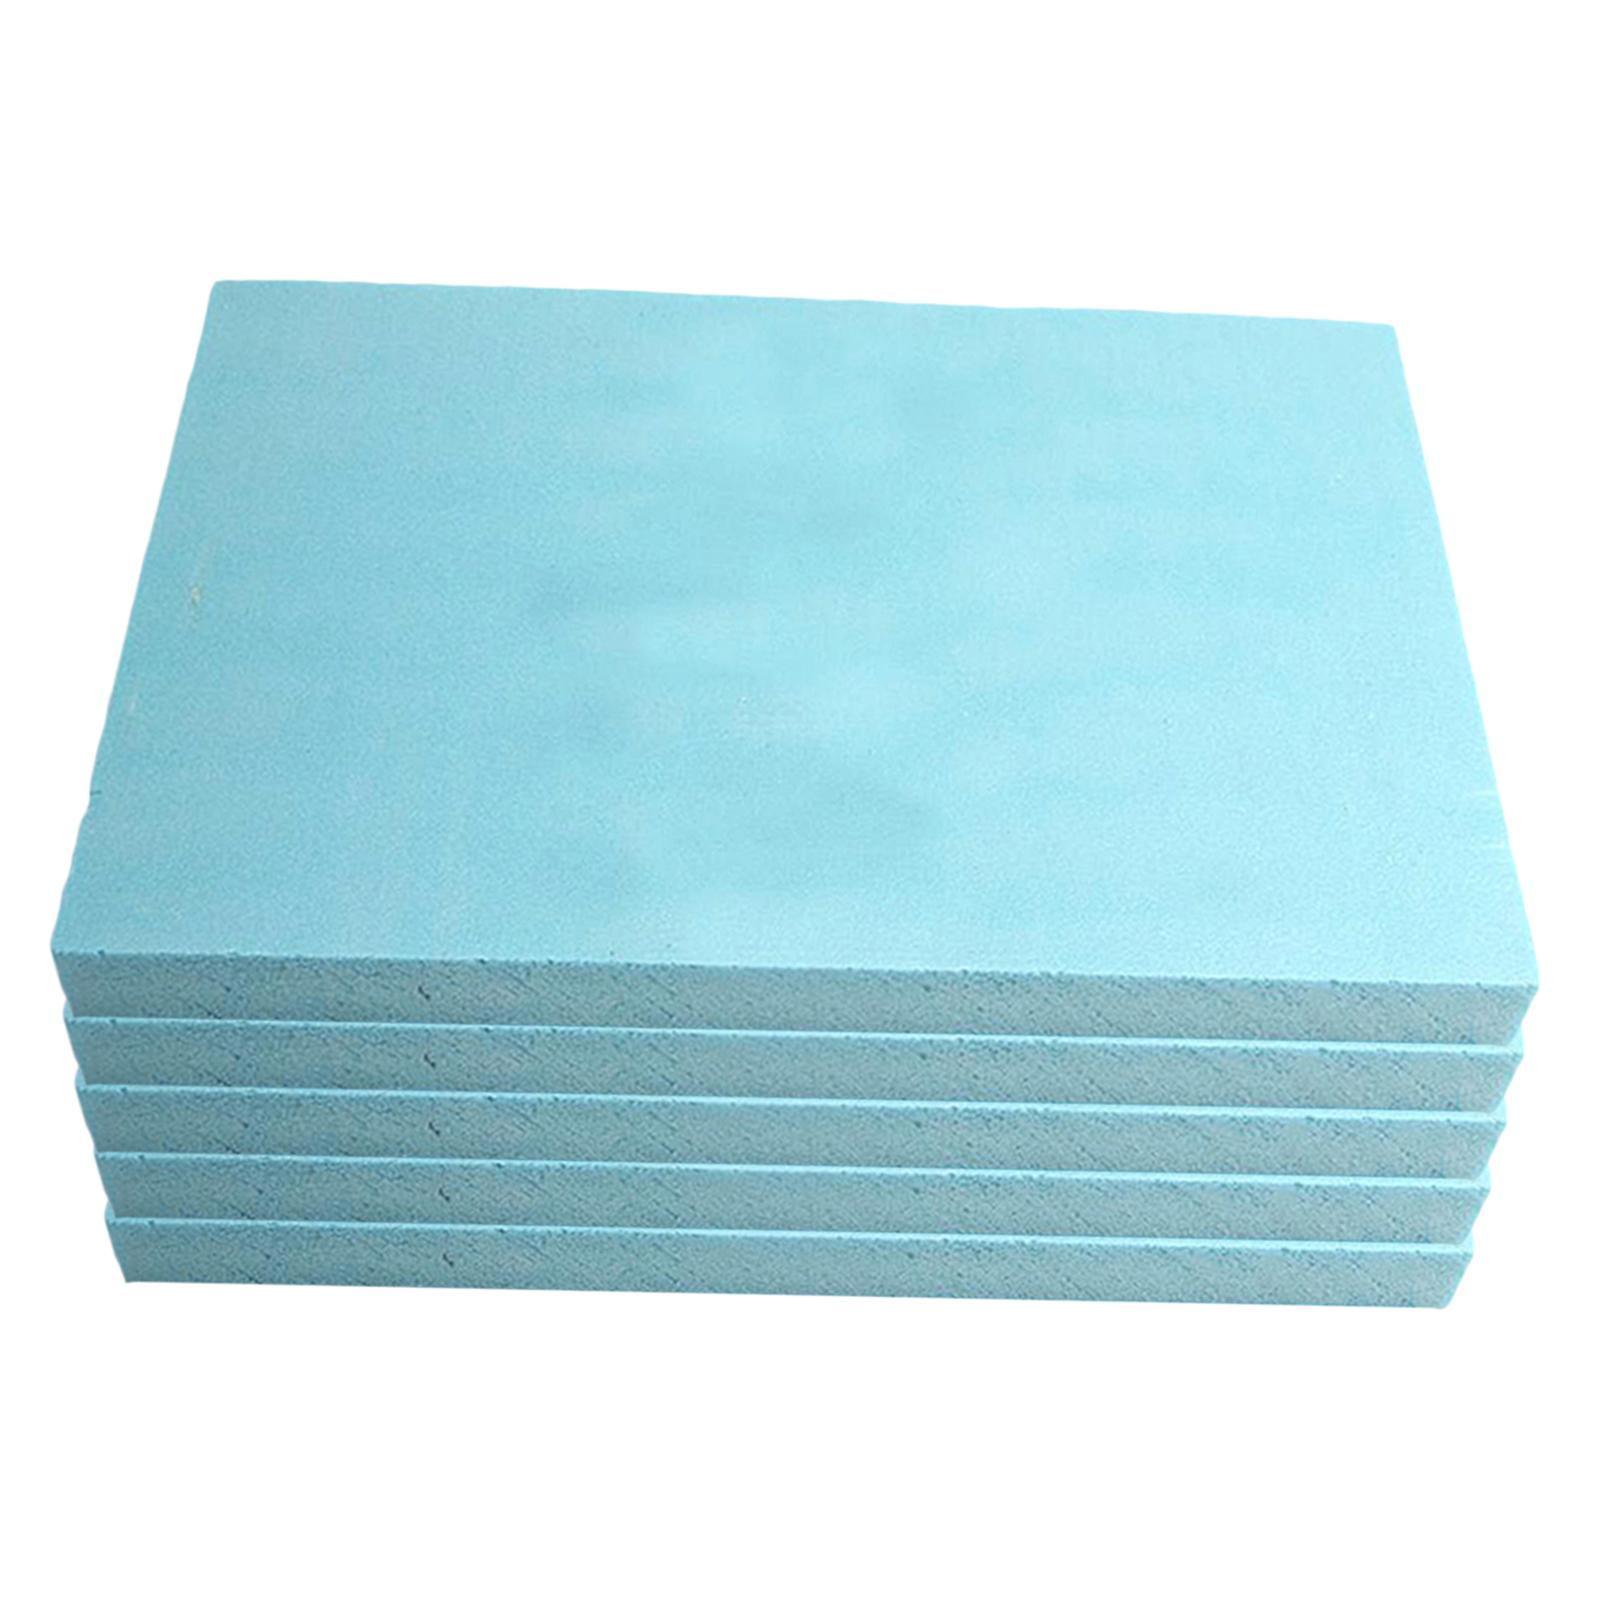 Foam Sheets for Crafts 7.87 x 3.94 x 3.94 Inch Polystyrene Foam Board